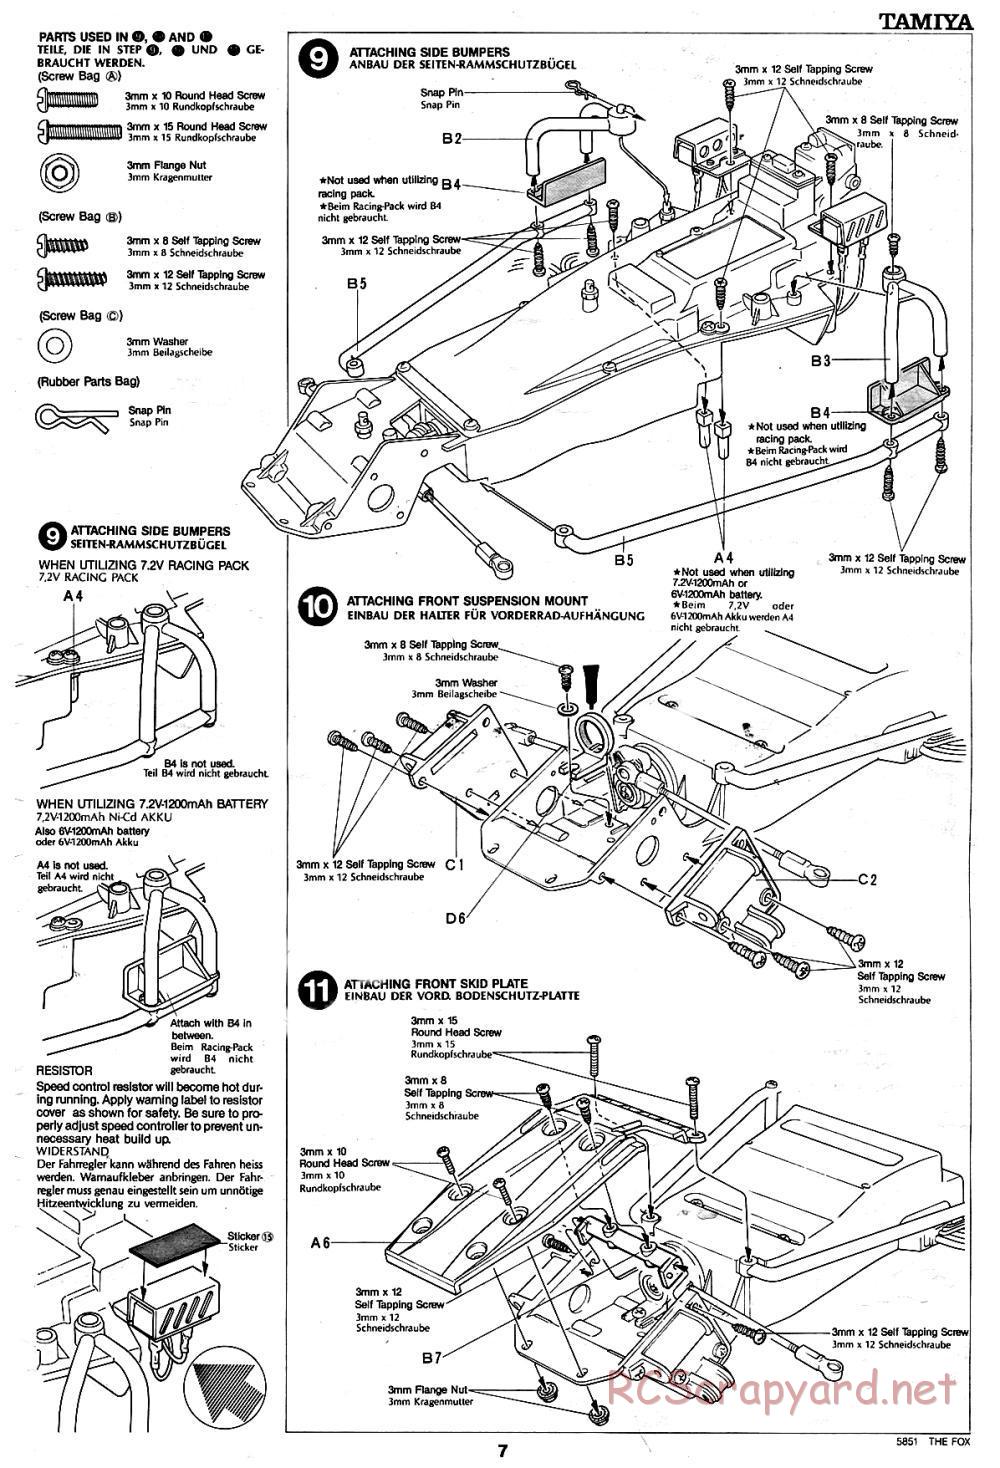 Tamiya - The Fox - 58051 - Manual - Page 7